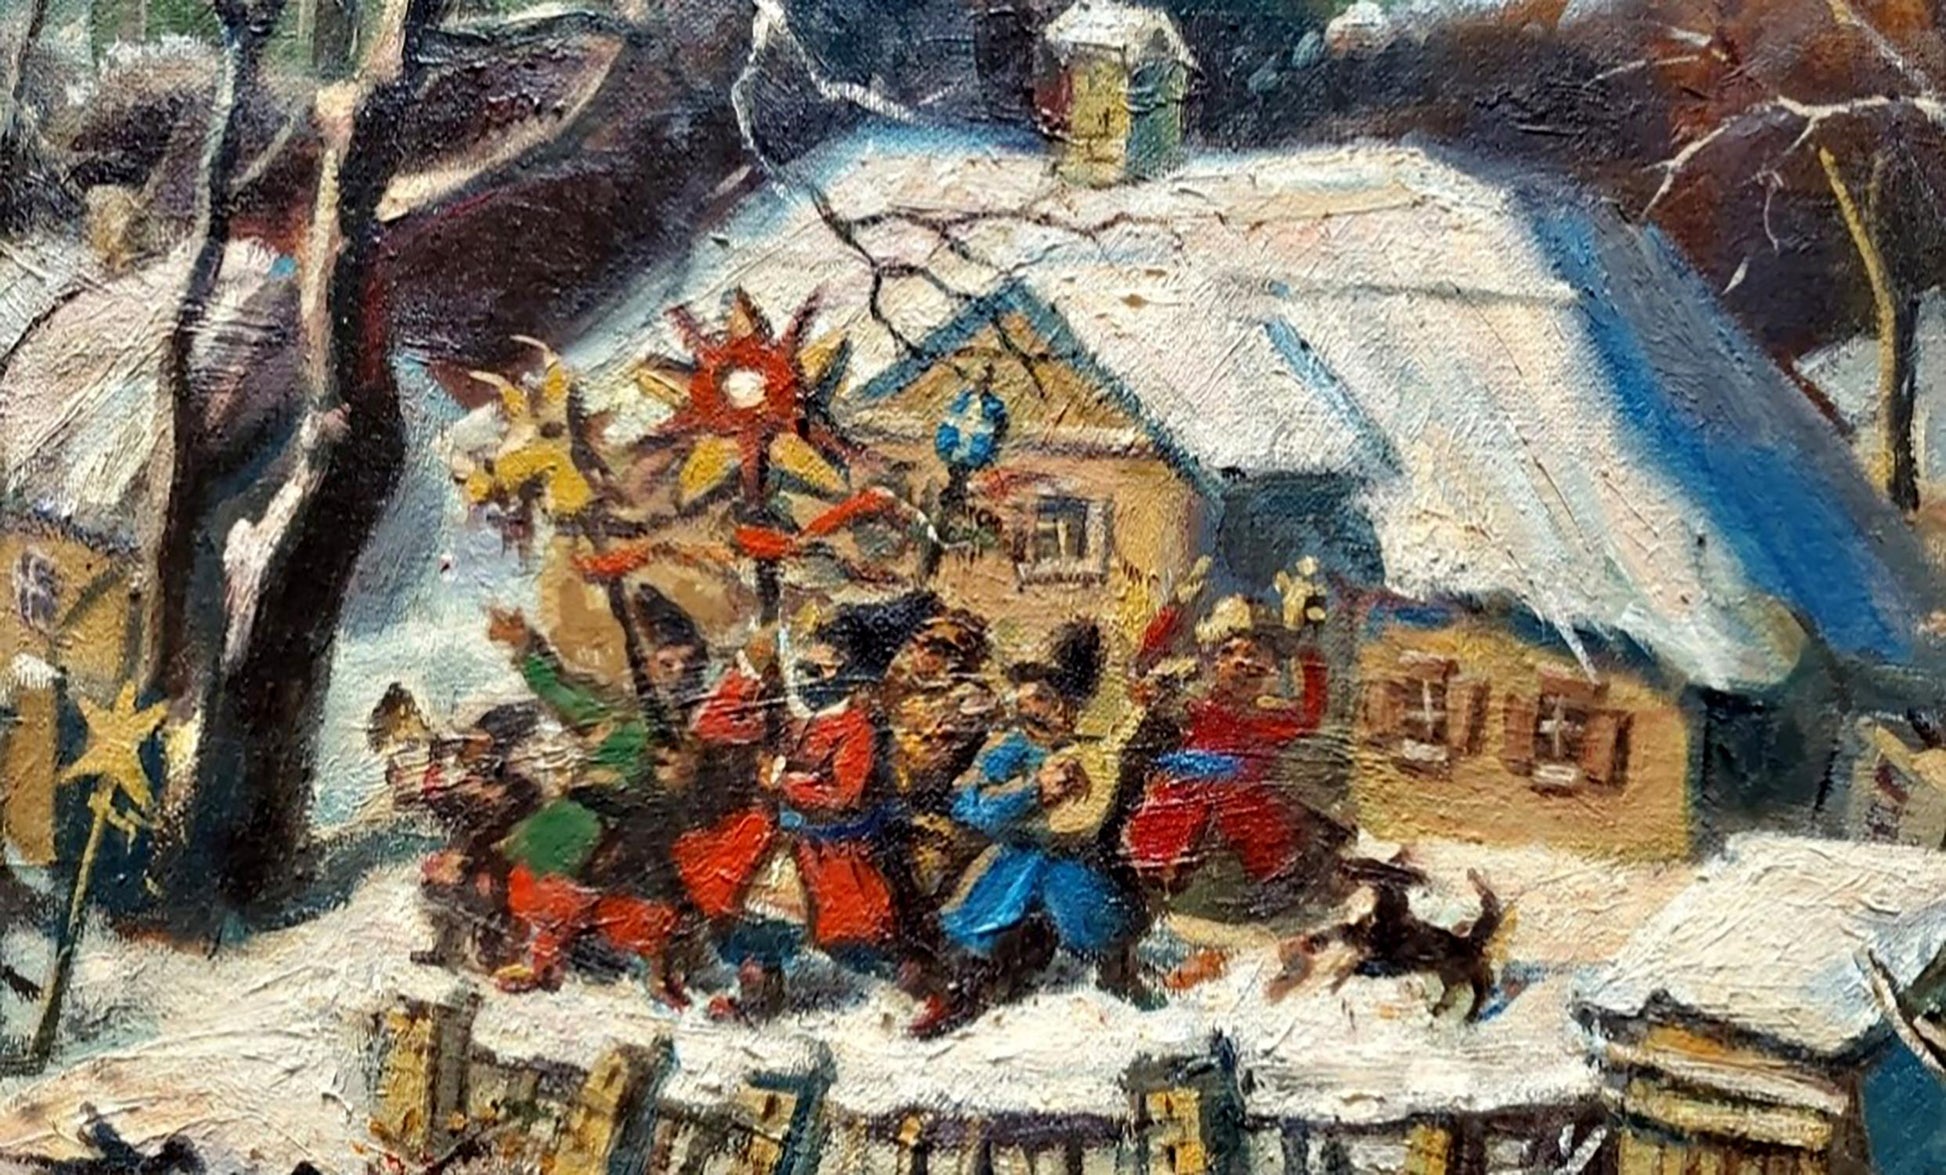 Oil painting "Carols in Ukrainian Village" by Litvinov, celebrating cultural festivities.